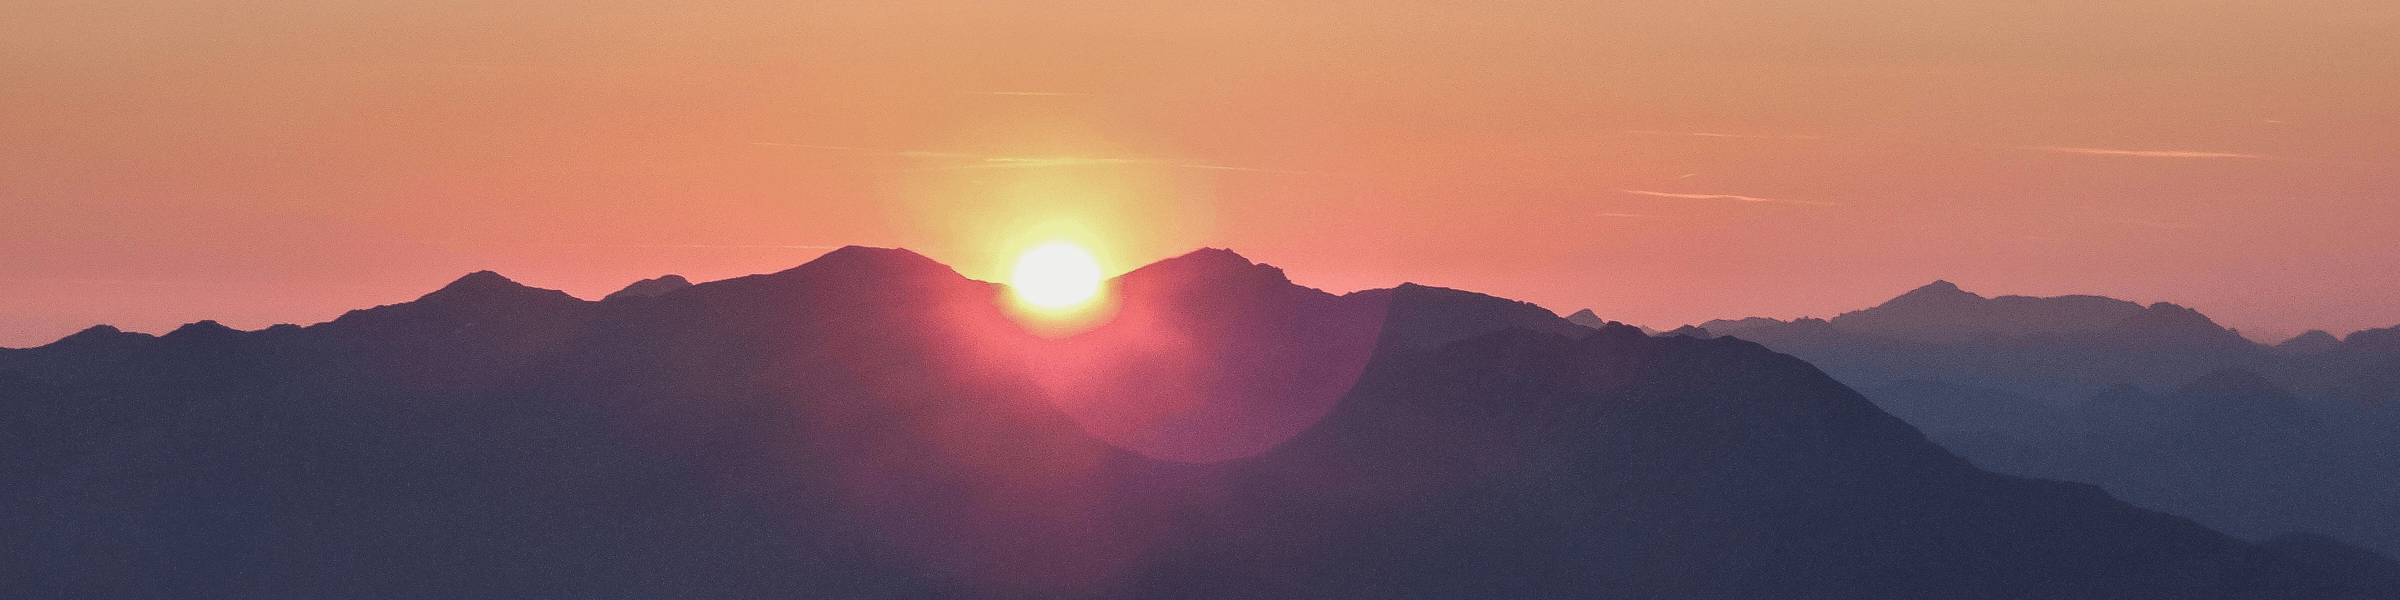 A sun setting over a mountain.